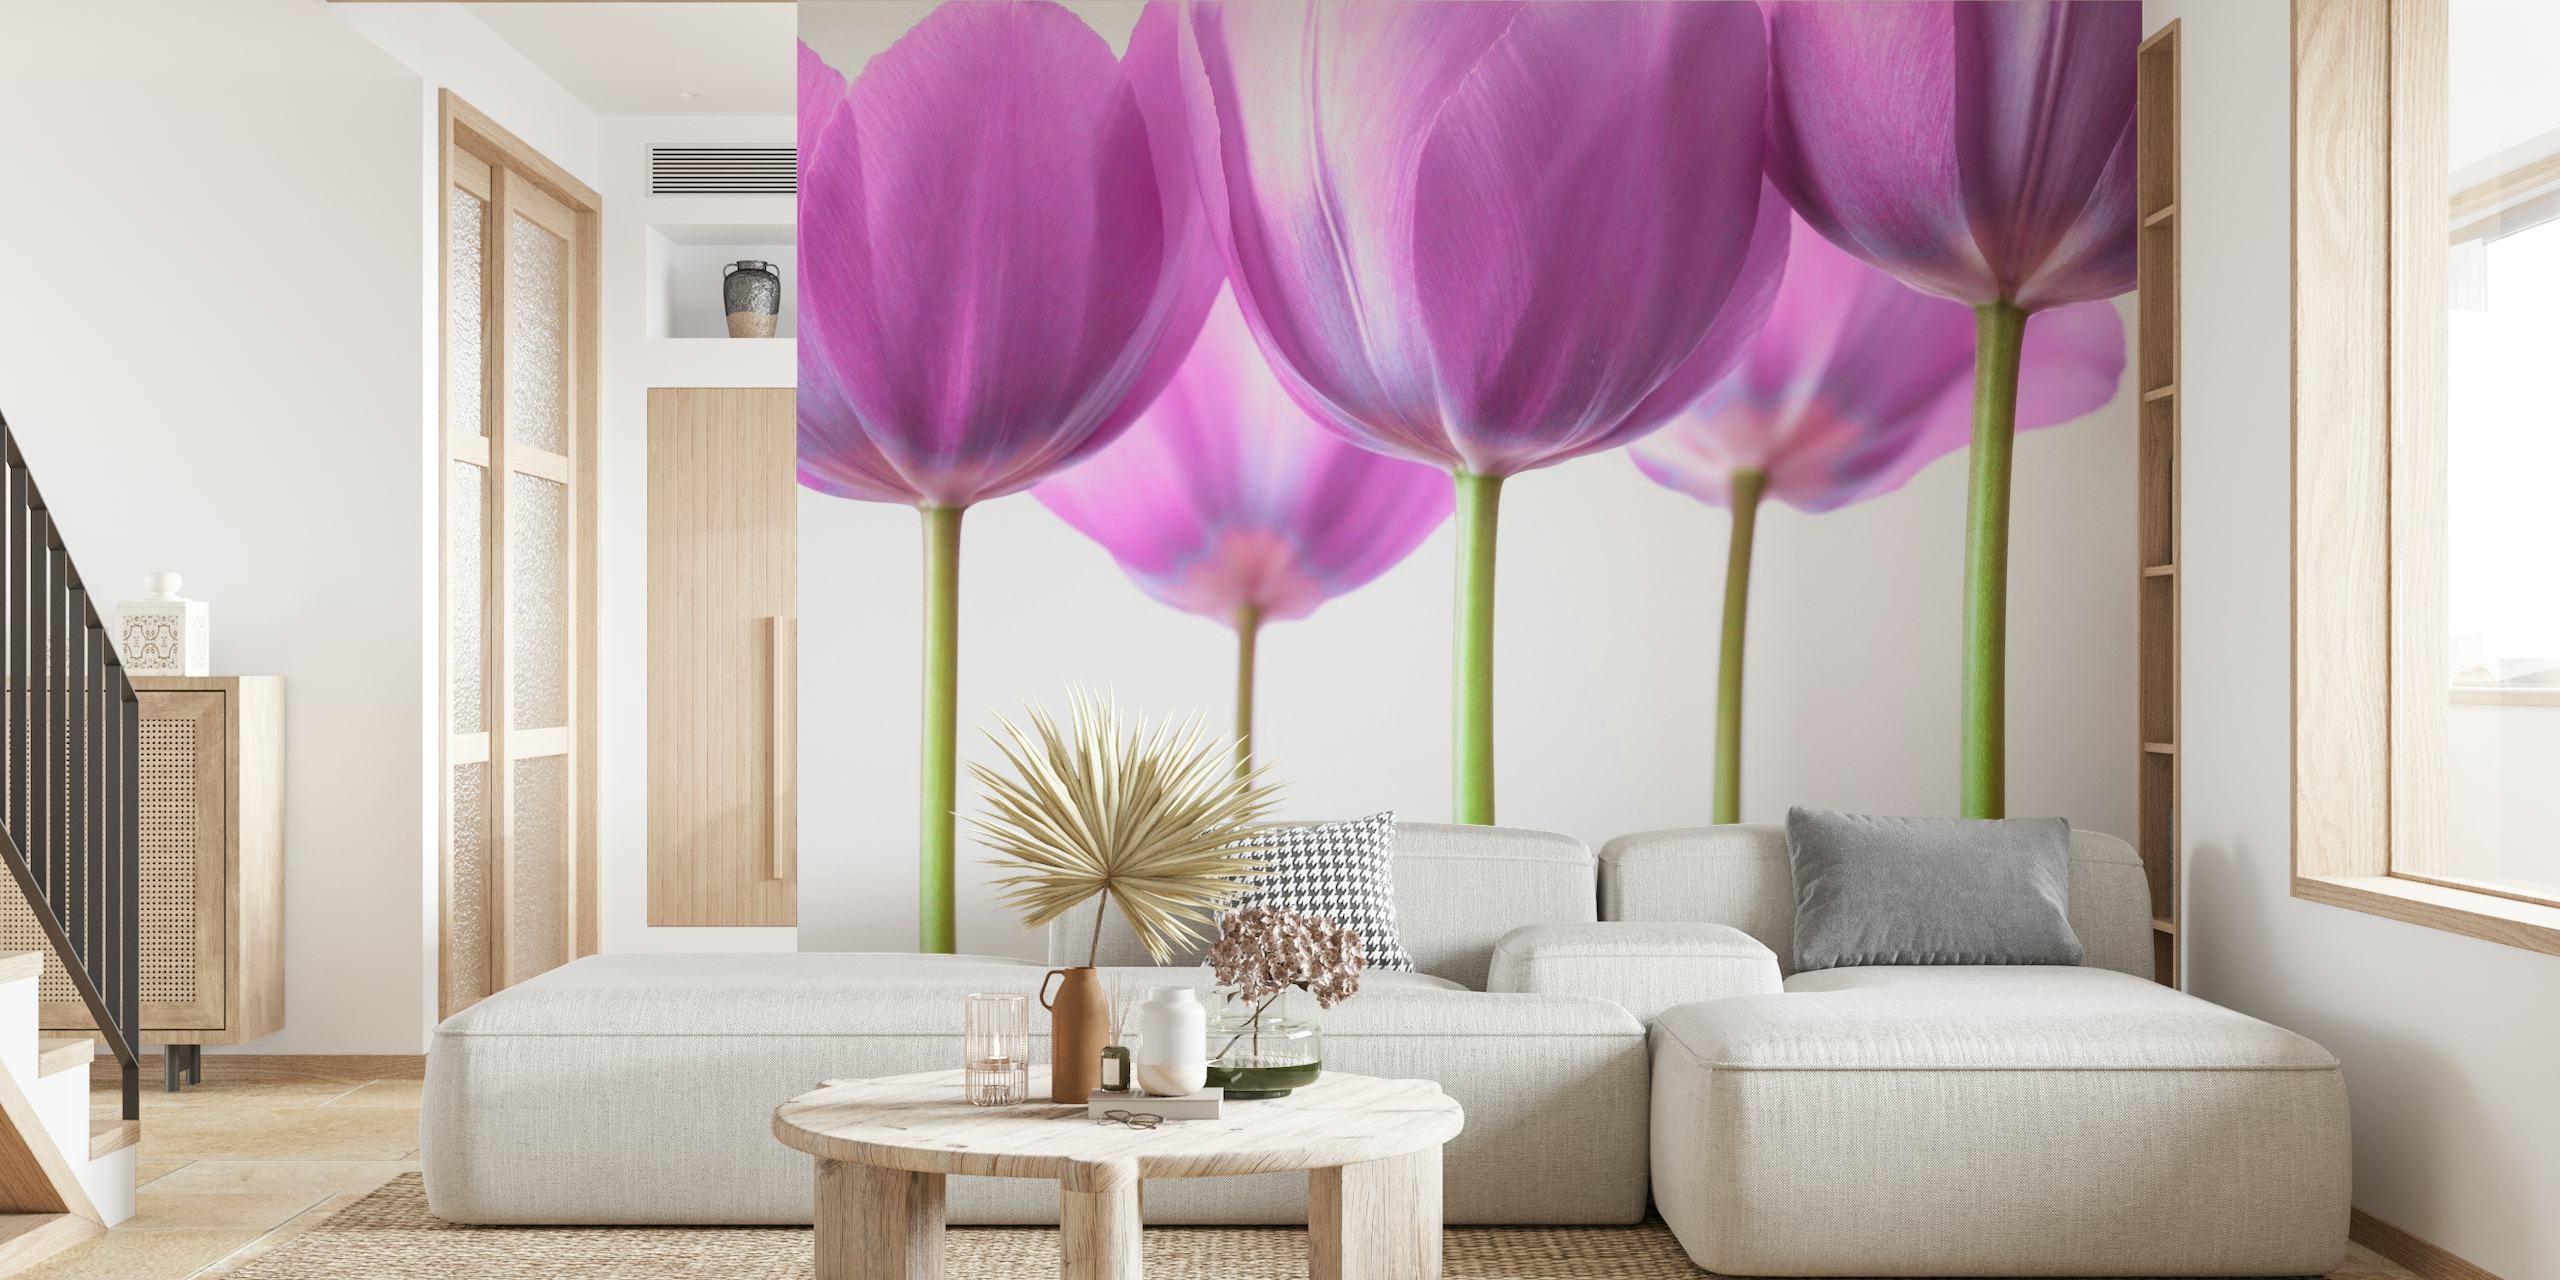 Purple Tulips papel pintado